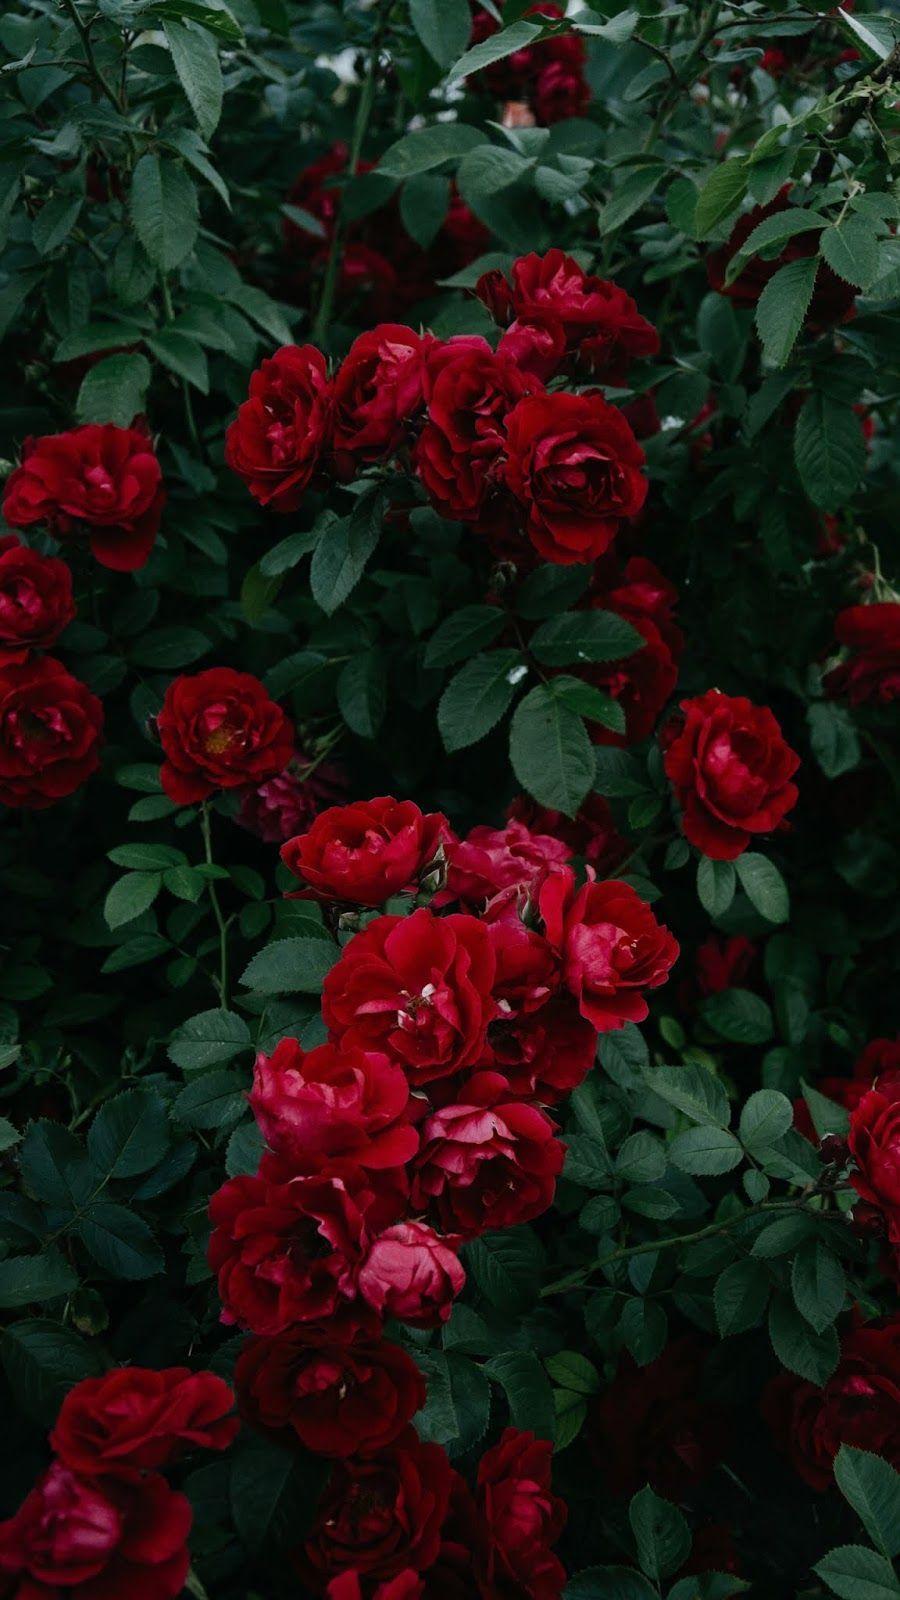 900x1600 Màu đỏ hồng thẩm mỹ # giấy dán tường #iphone #android # nền #followme.  Hình nền điện thoại hoa, Hoa hồng thẩm mỹ, Hình nền hoa hồng đỏ